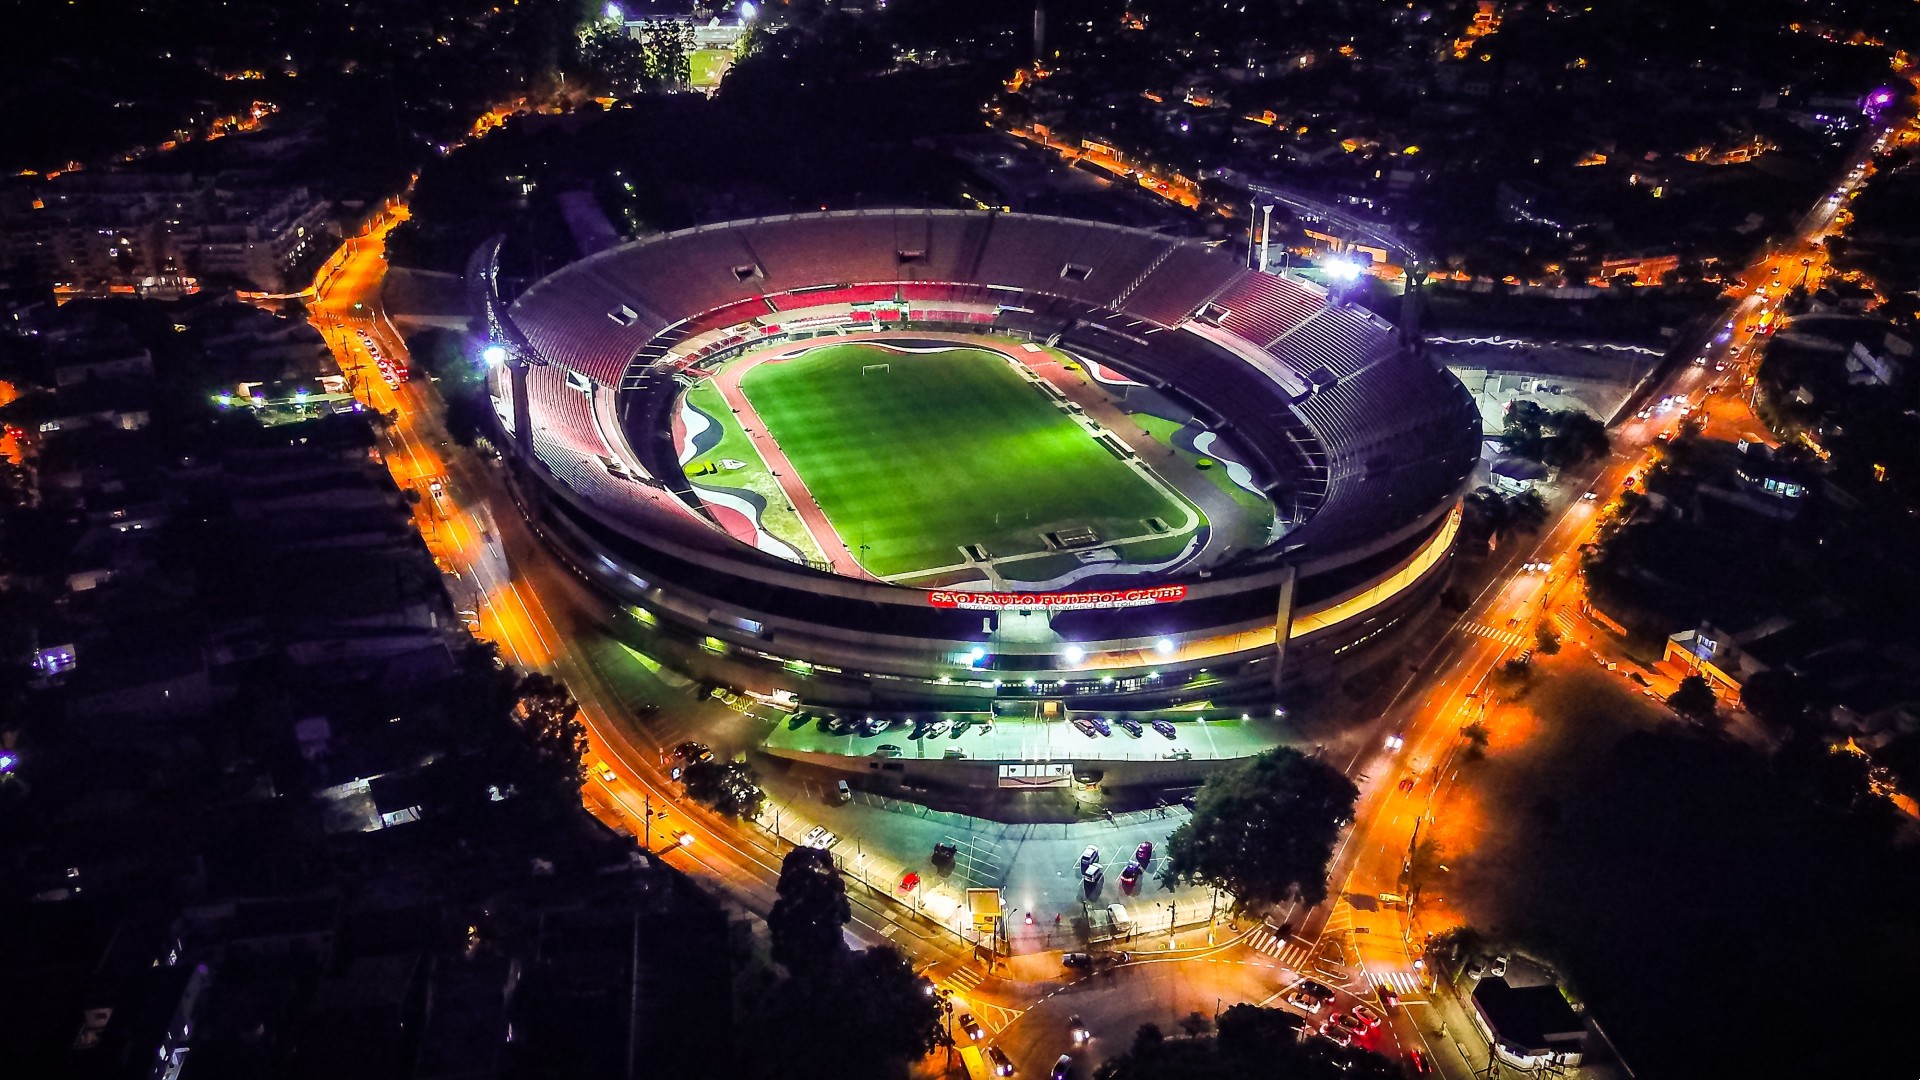 Estádio do Morumbi - Cícero Pompeu de Toledo #estadiodomorumbi